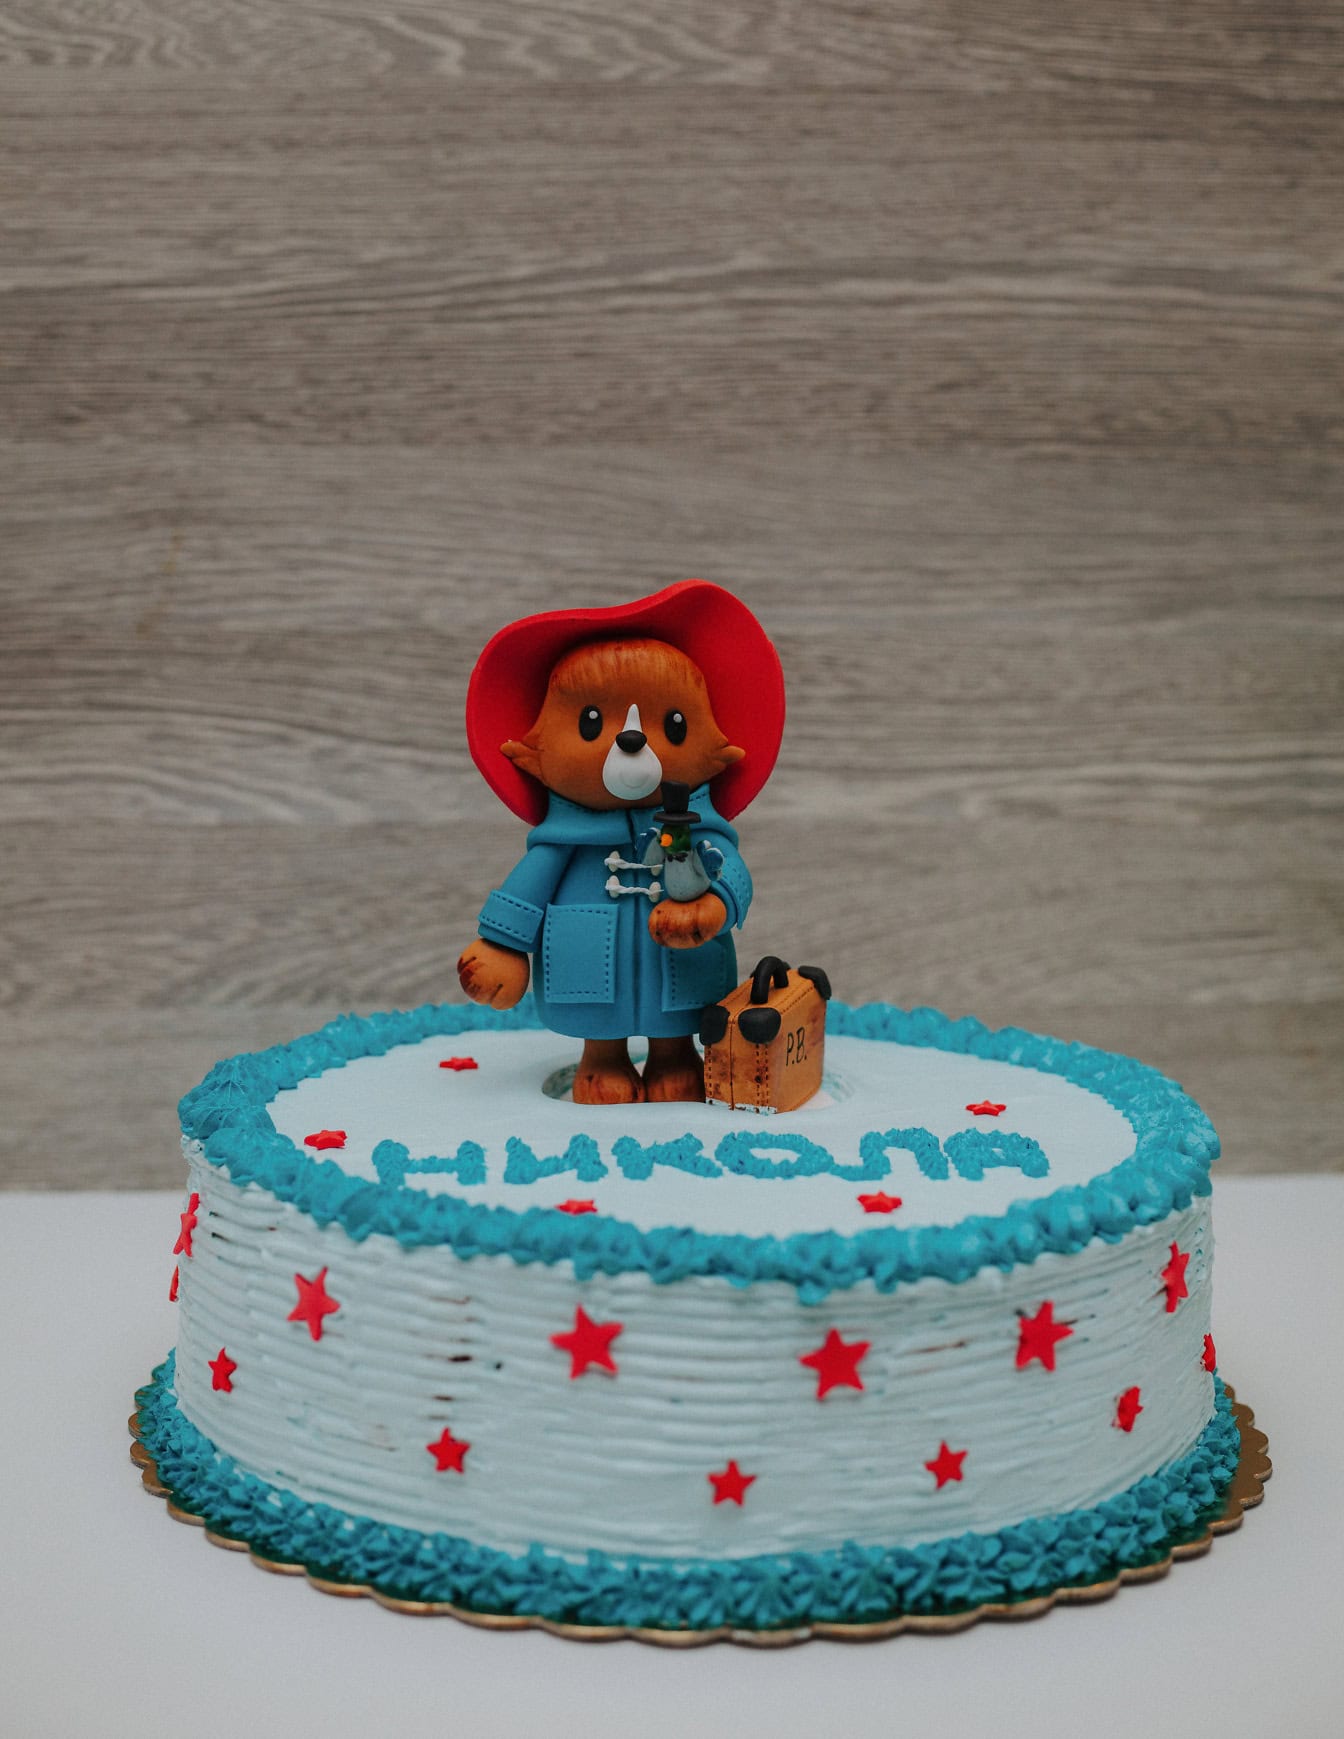 Születésnapi torta Paddington mackó alakú díszítéssel a tetején